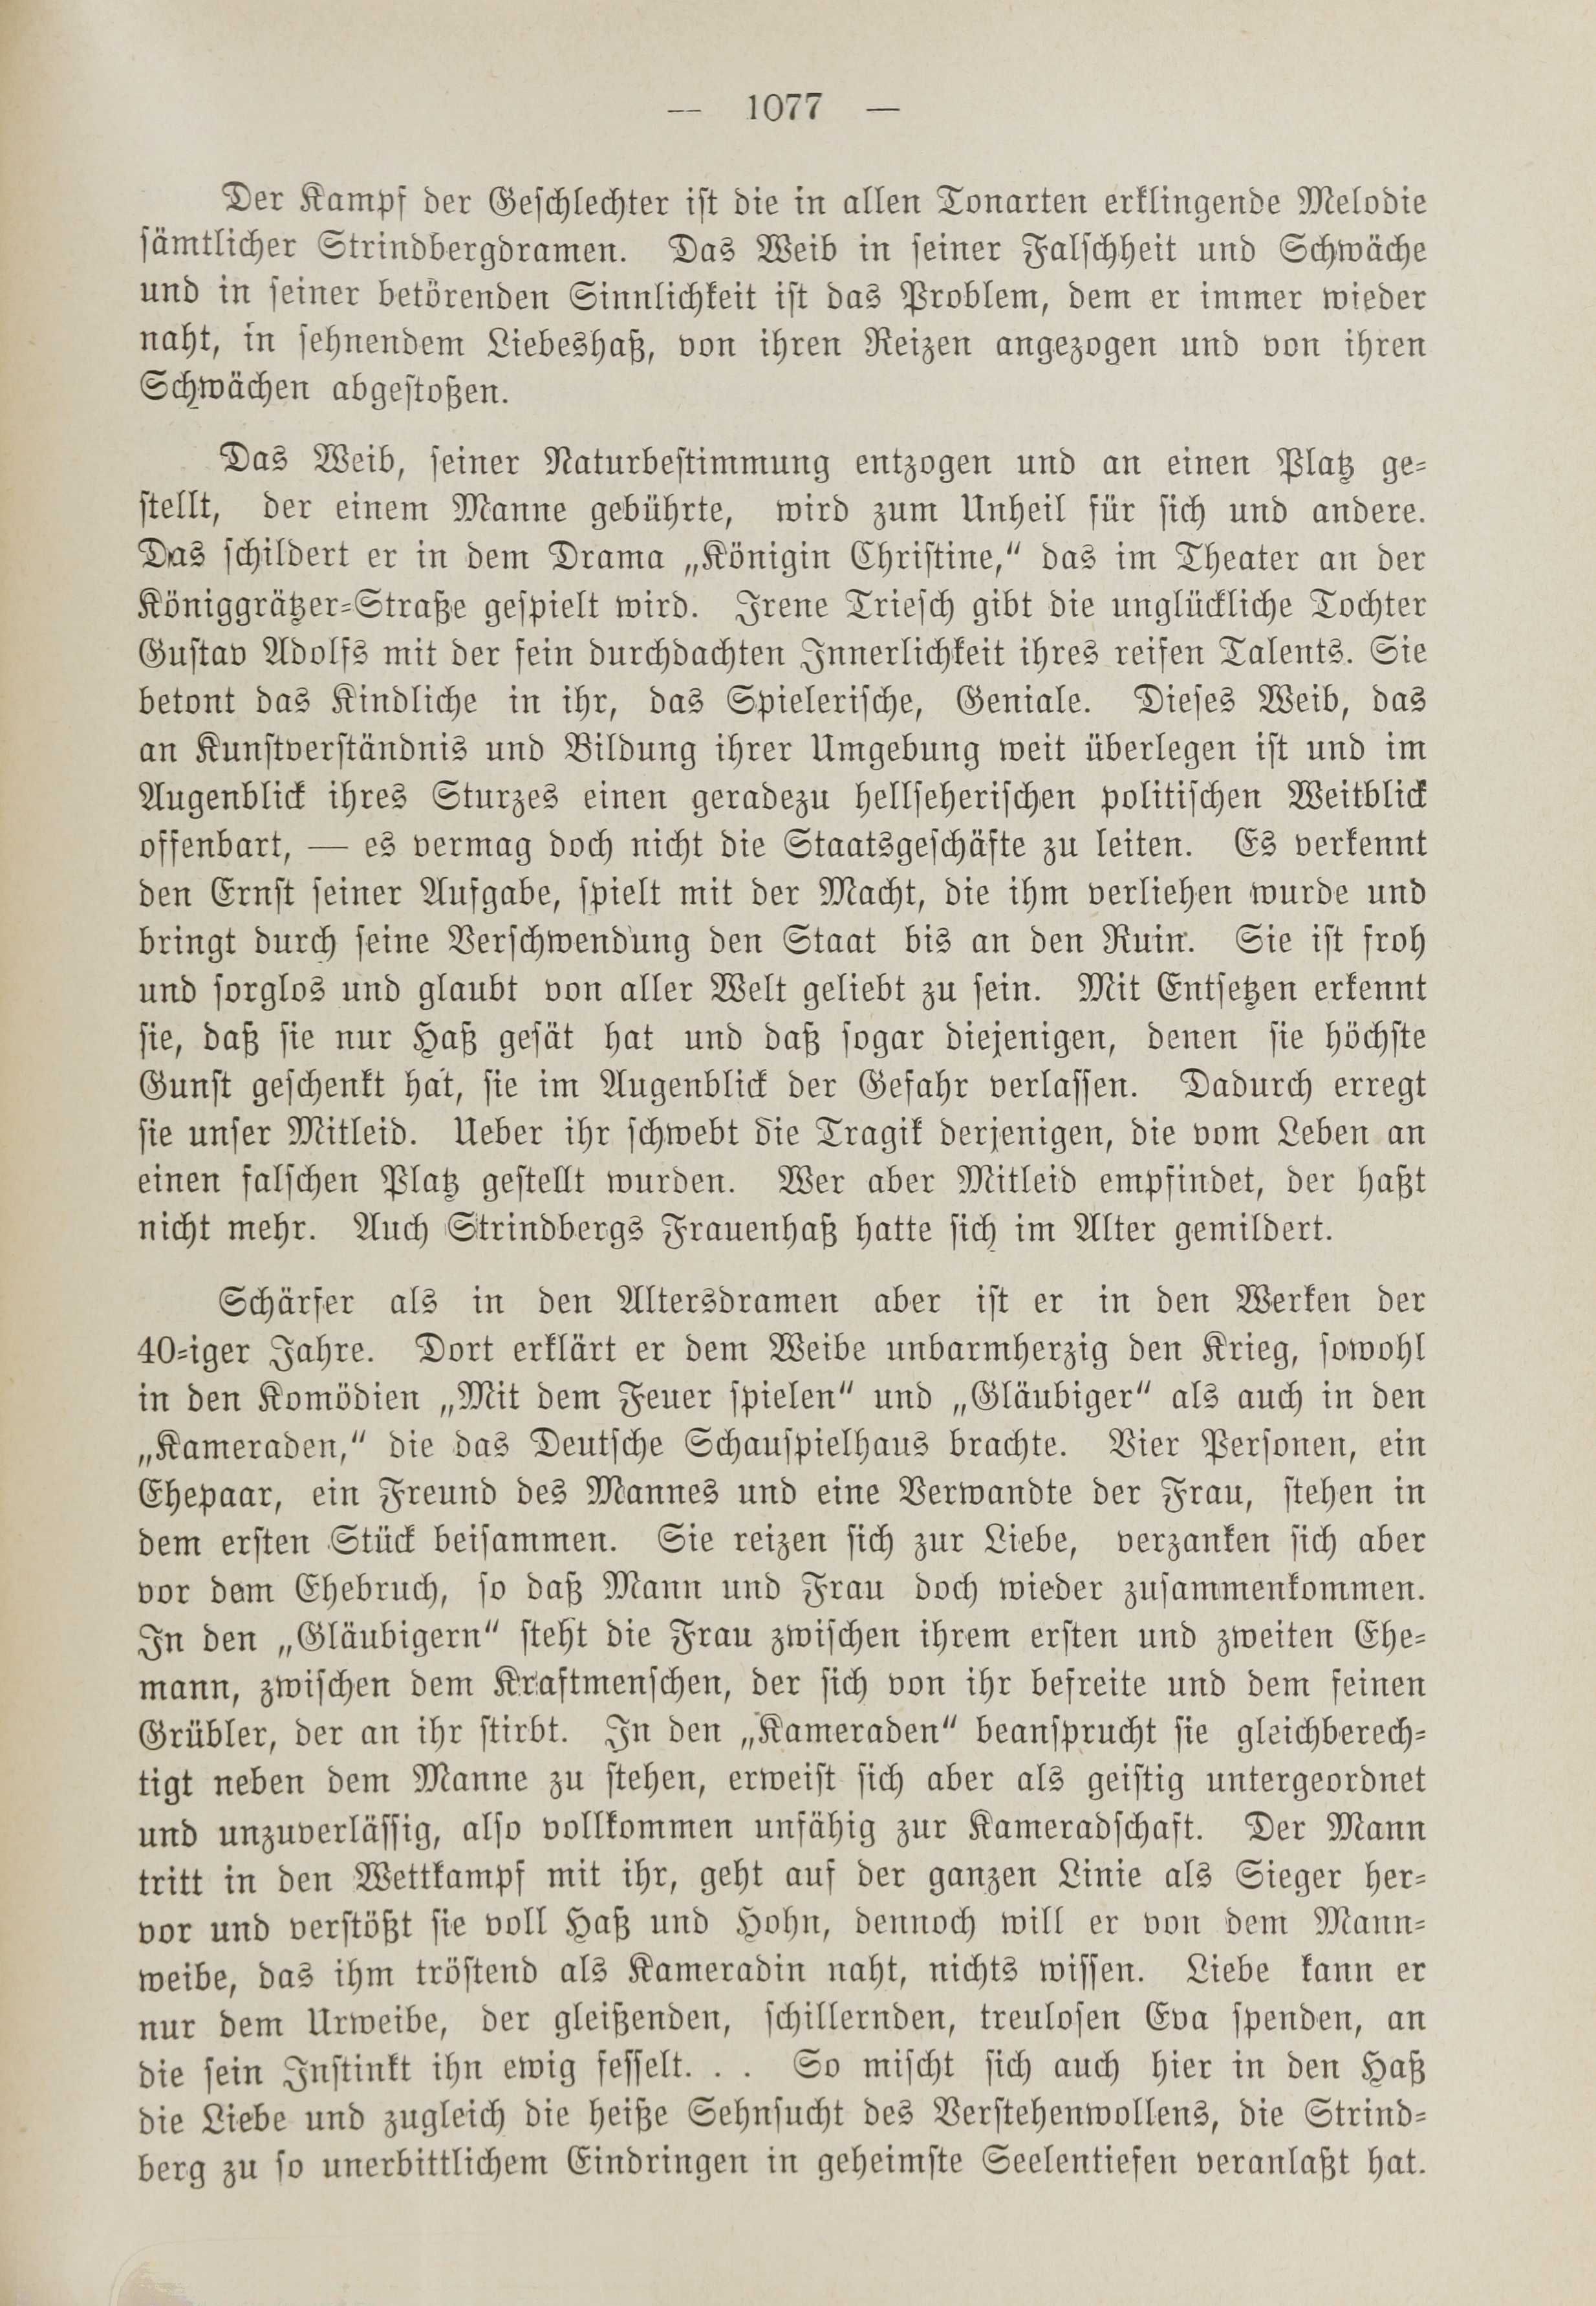 Deutsche Monatsschrift für Russland [1] (1912) | 1085. (1077) Main body of text